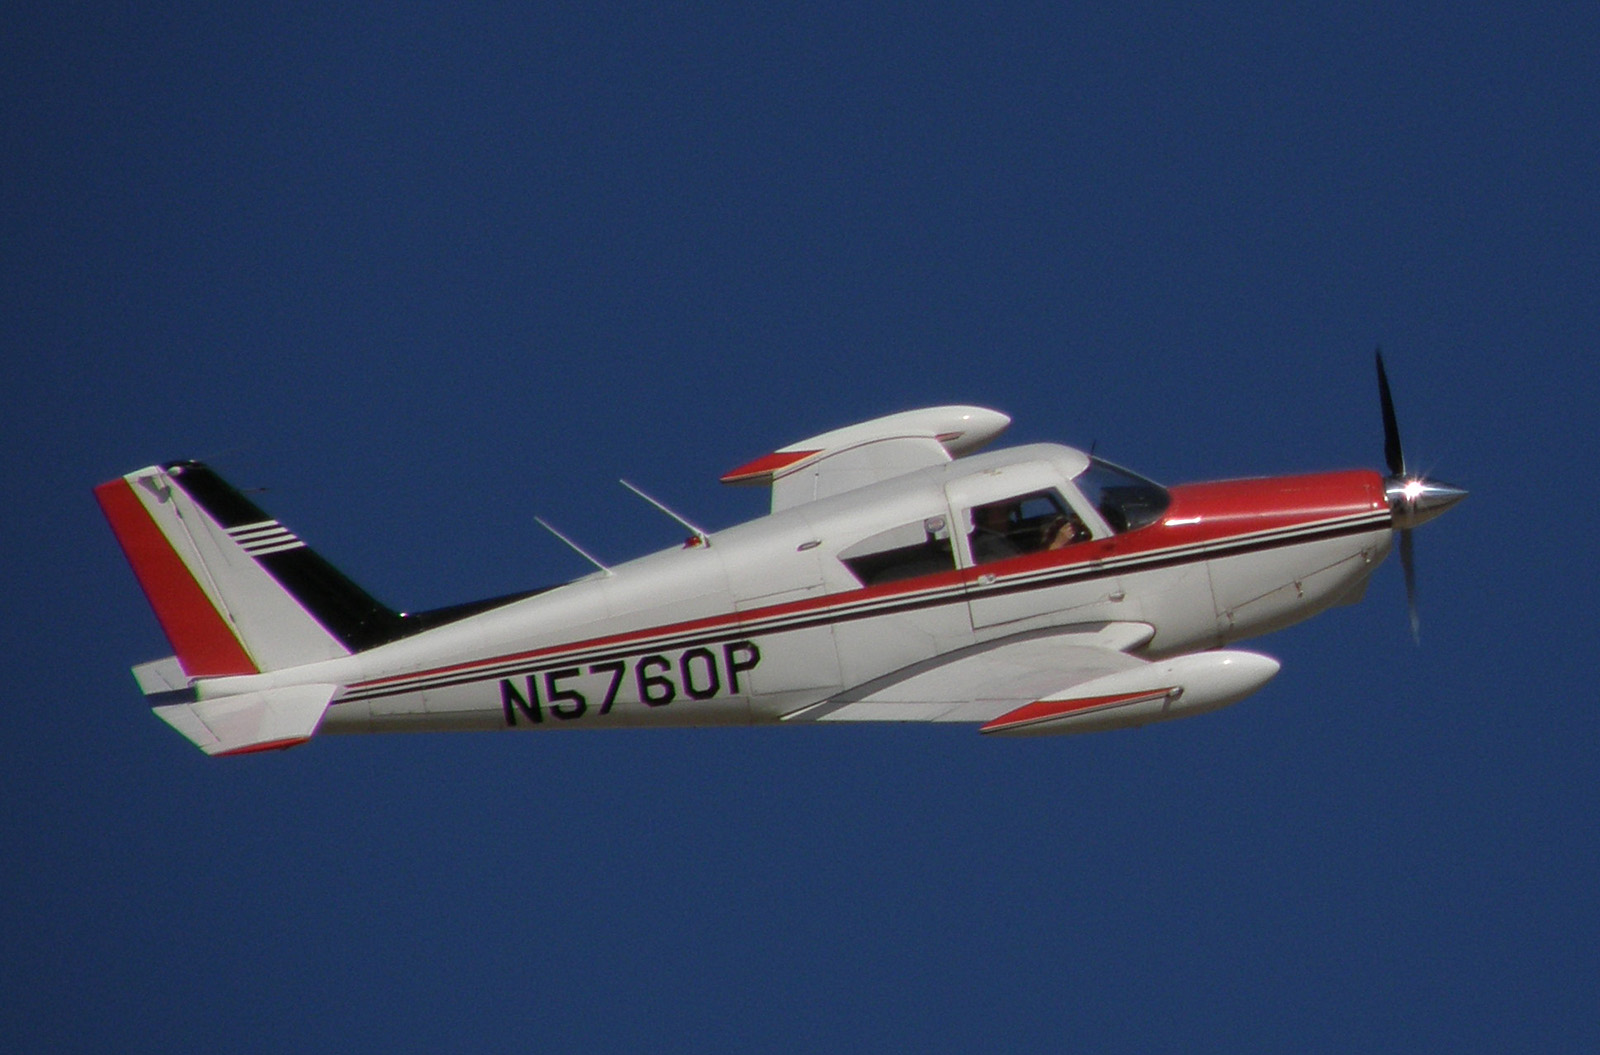 Piper PA-24 Comanche previous